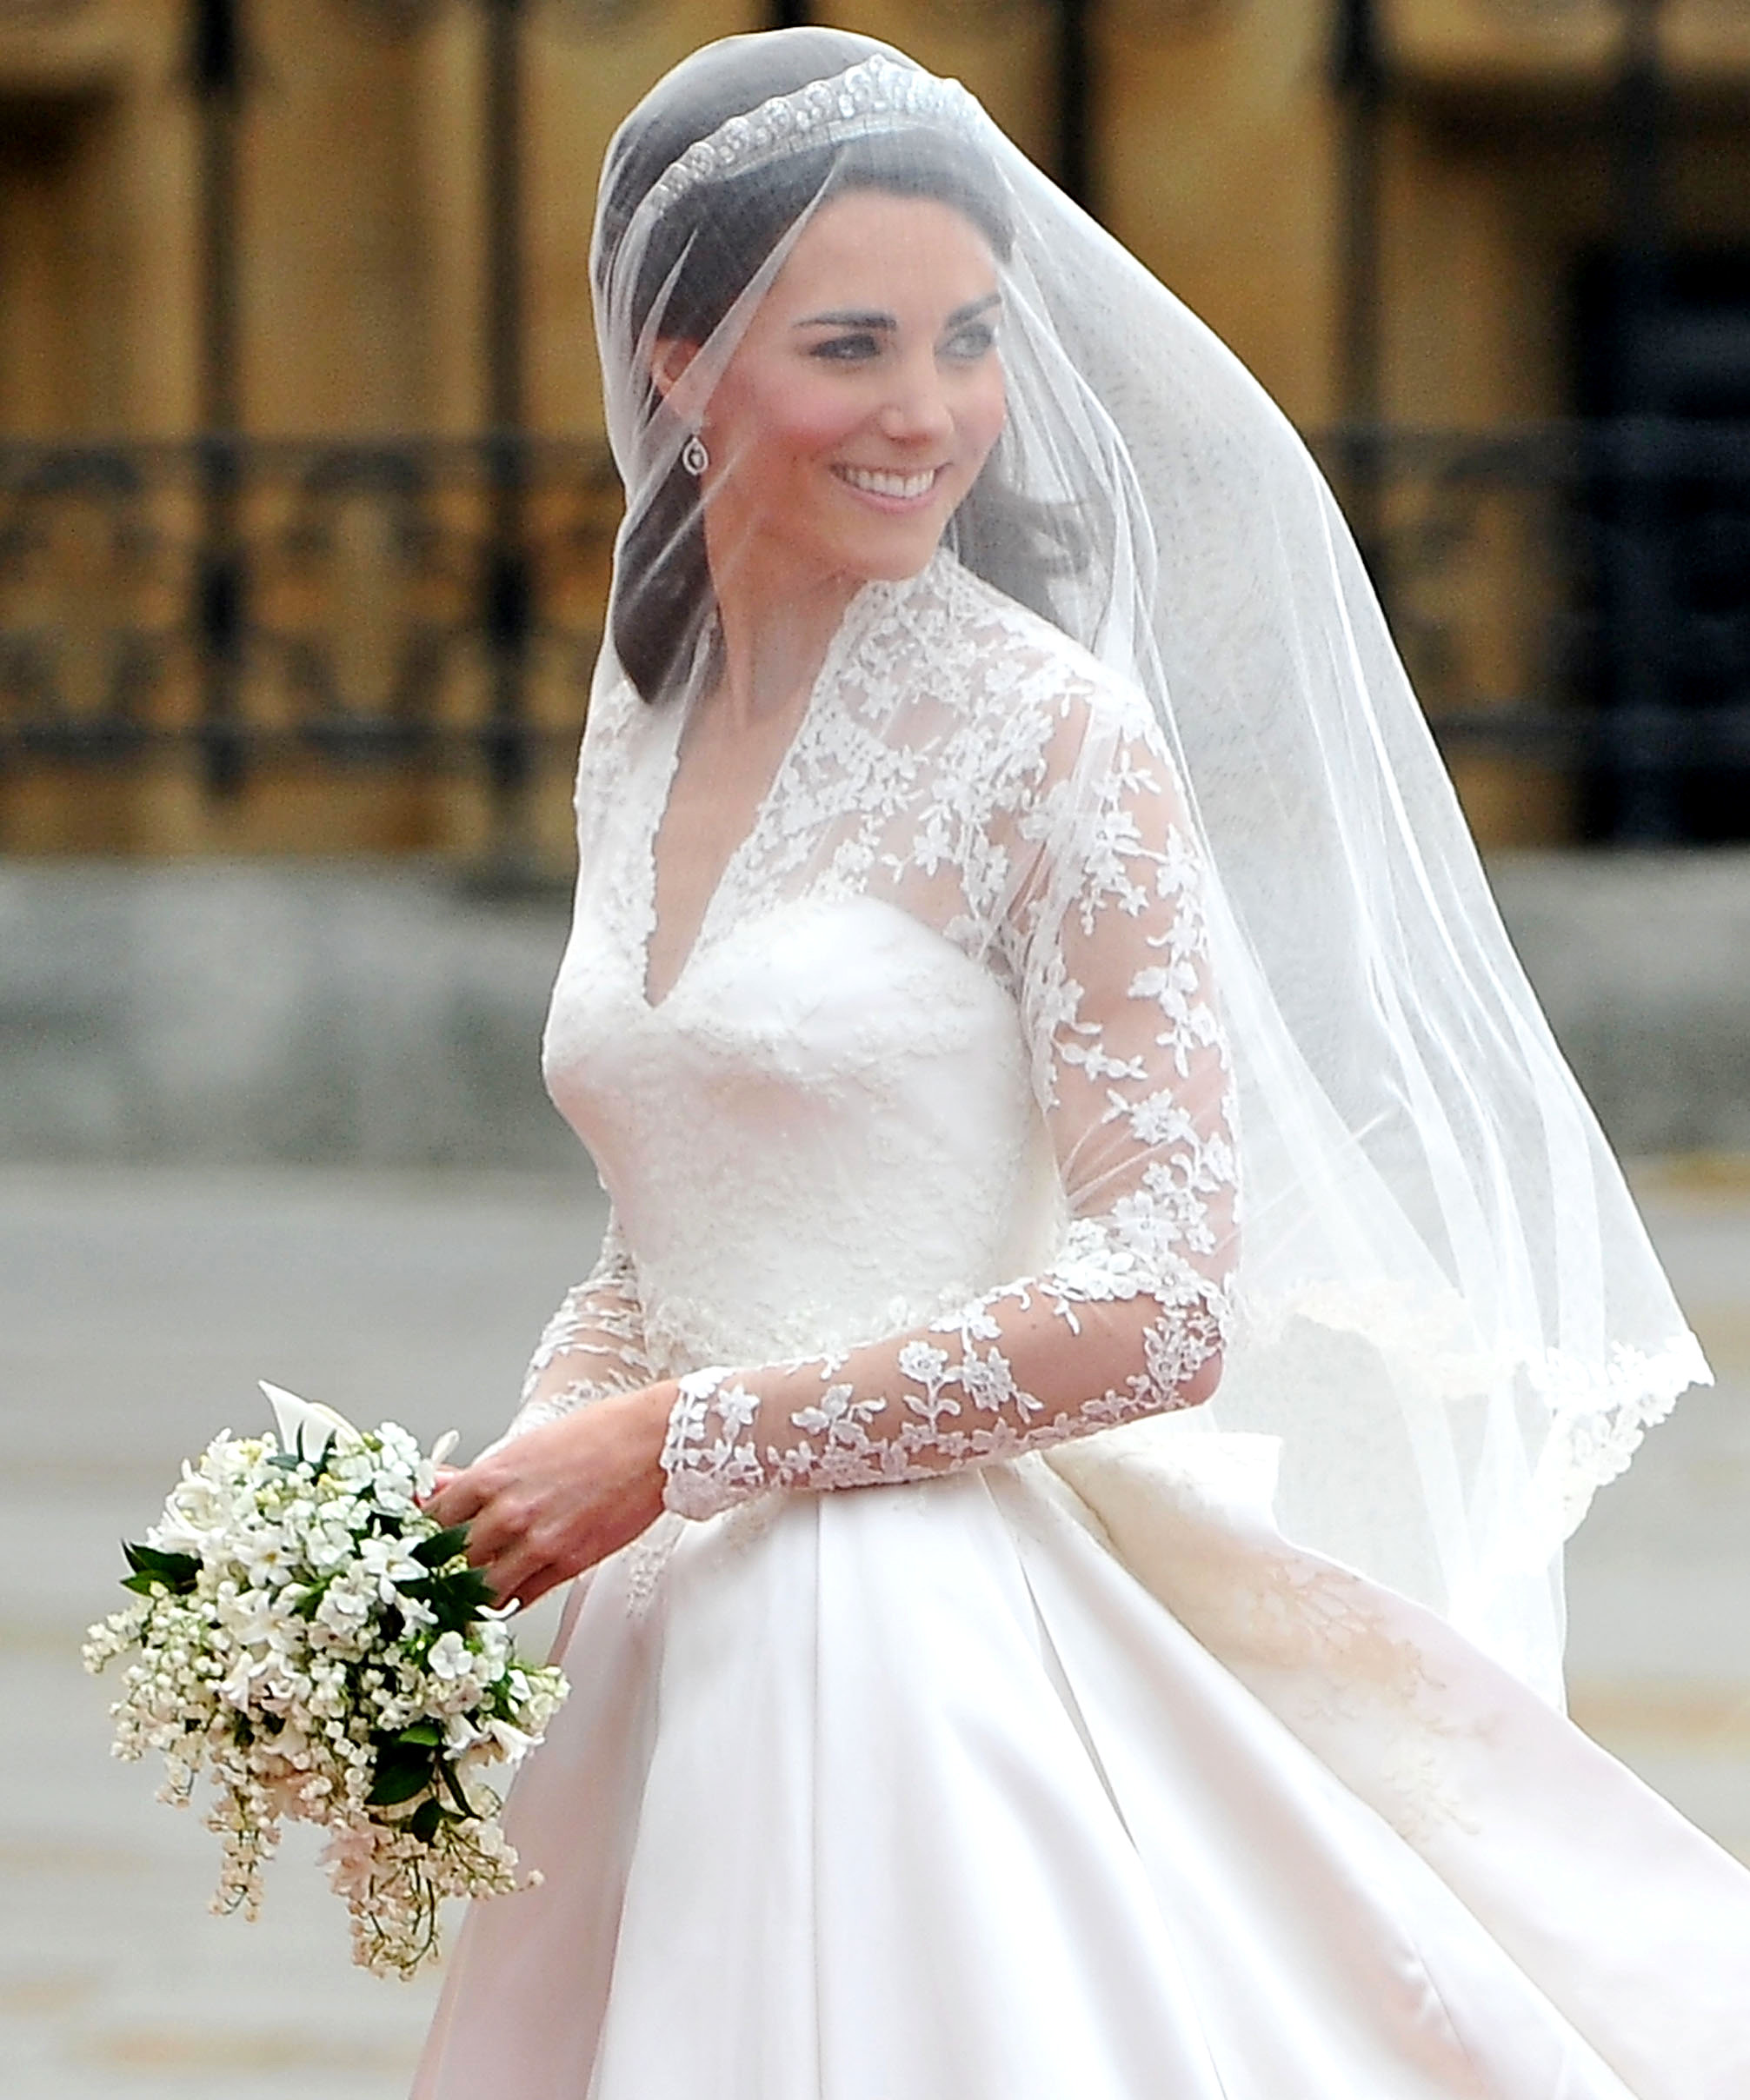 Η Kate Middleton με τούλινο μεταξωτό χειροποίητο πέπλο και τιάρα 'Halo' Cartier, που της δάνεισε η Queen Elizabeth.